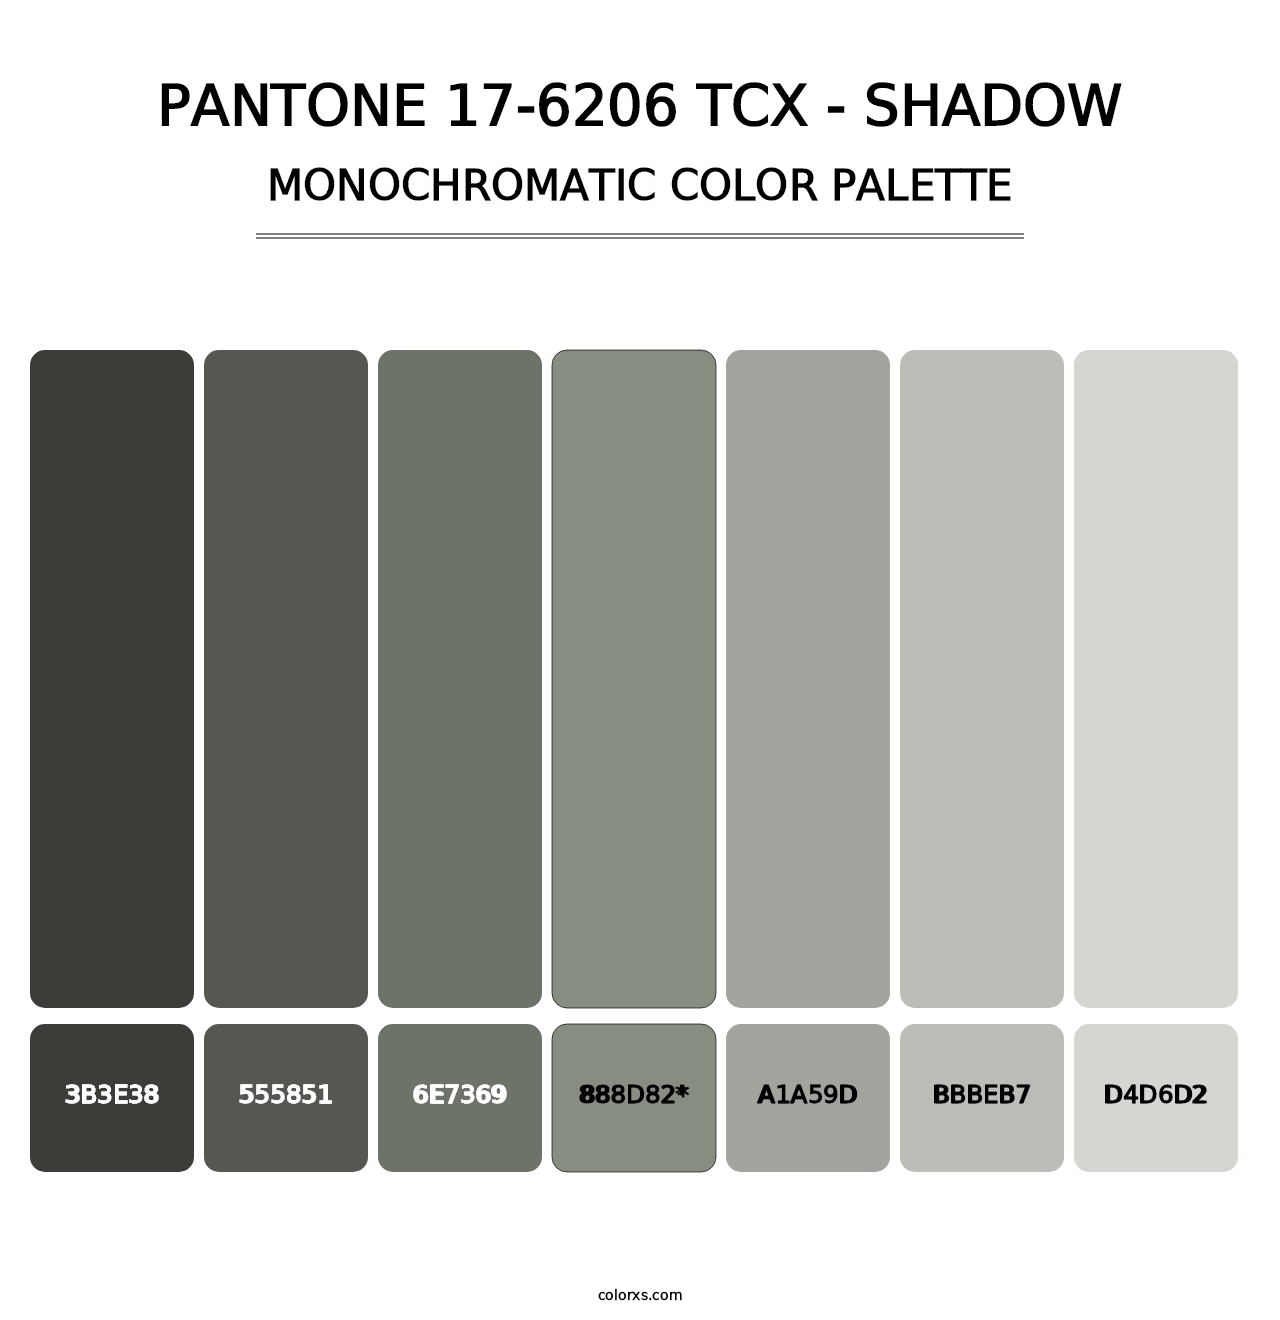 PANTONE 17-6206 TCX - Shadow - Monochromatic Color Palette